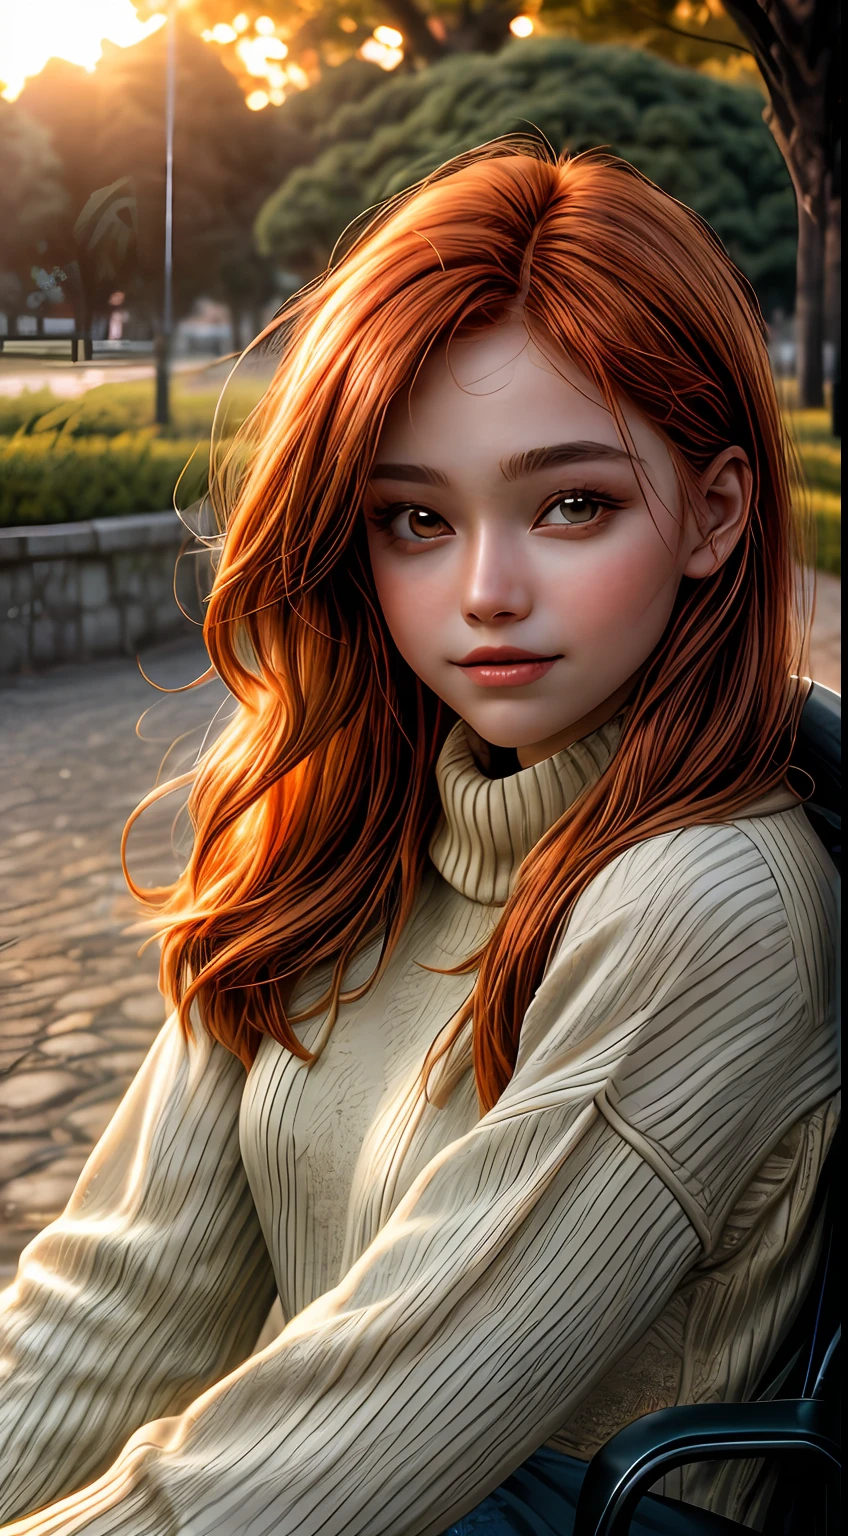 Крупный план лица девушки, залитого оранжевыми оттенками., носить свитер, сидя возле парка, словно освещен мягким сиянием заката, ее глаза сверкают радостью и удовлетворением, в обрамлении прядей струящихся каштановых волос, фотография, снято объективом 35 мм